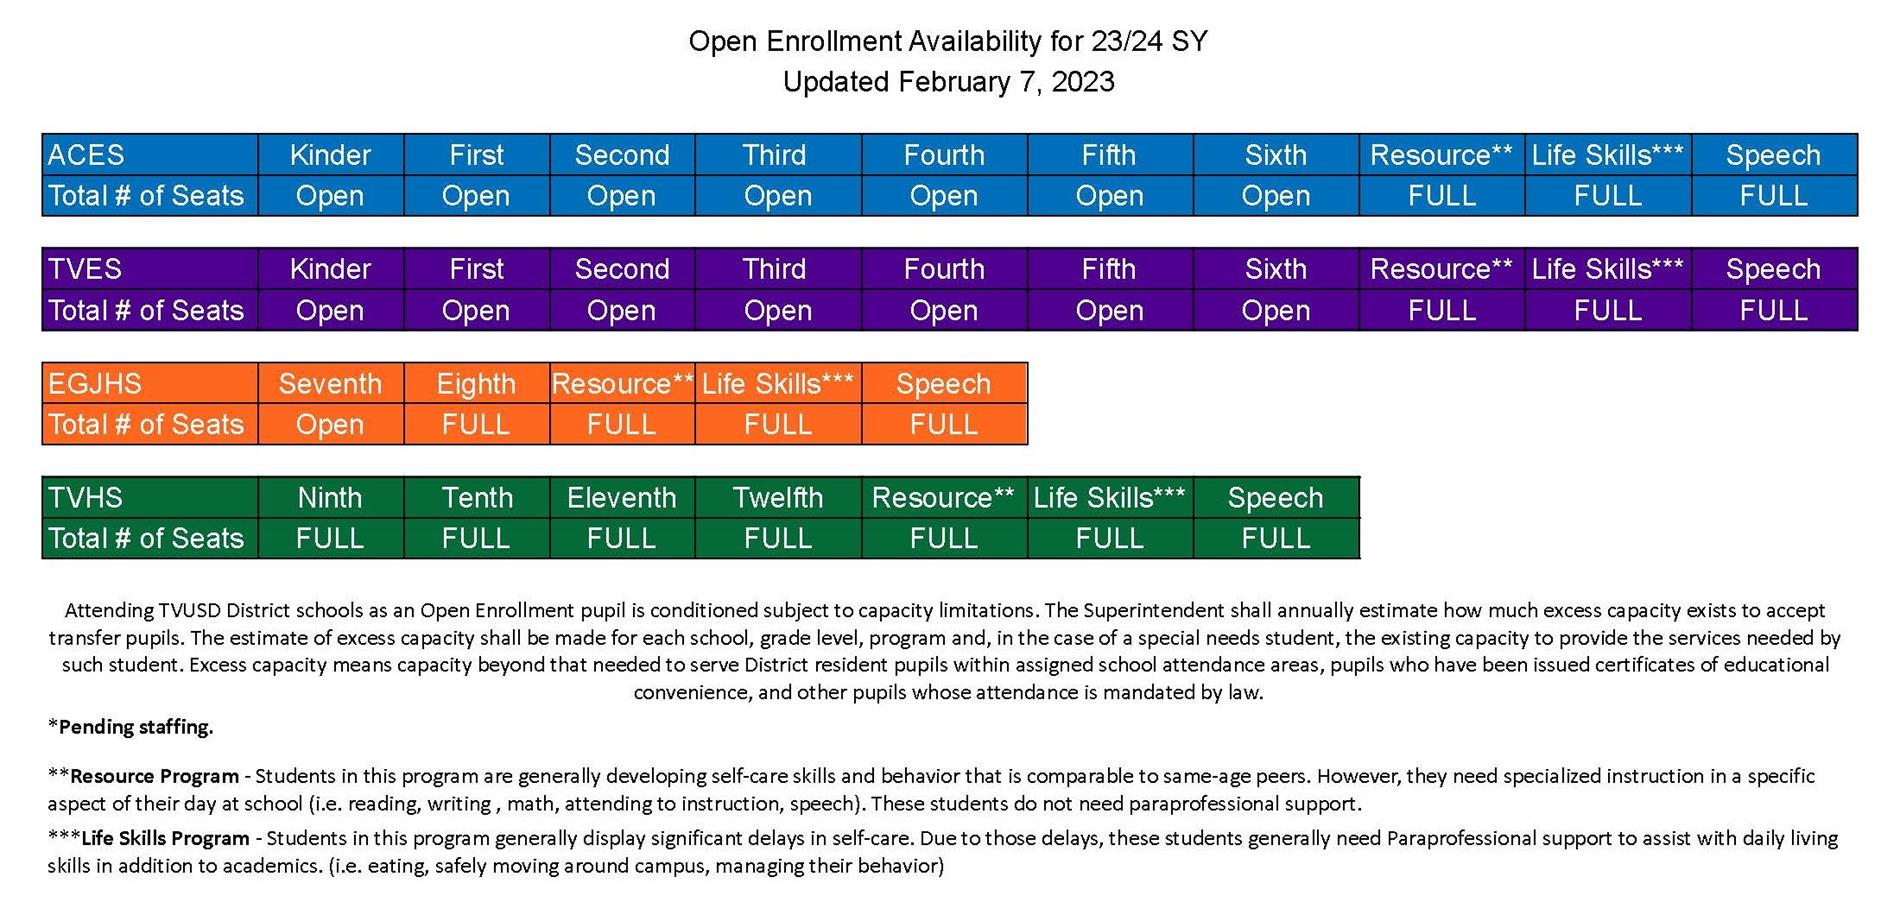 Open Enrollment Capacity